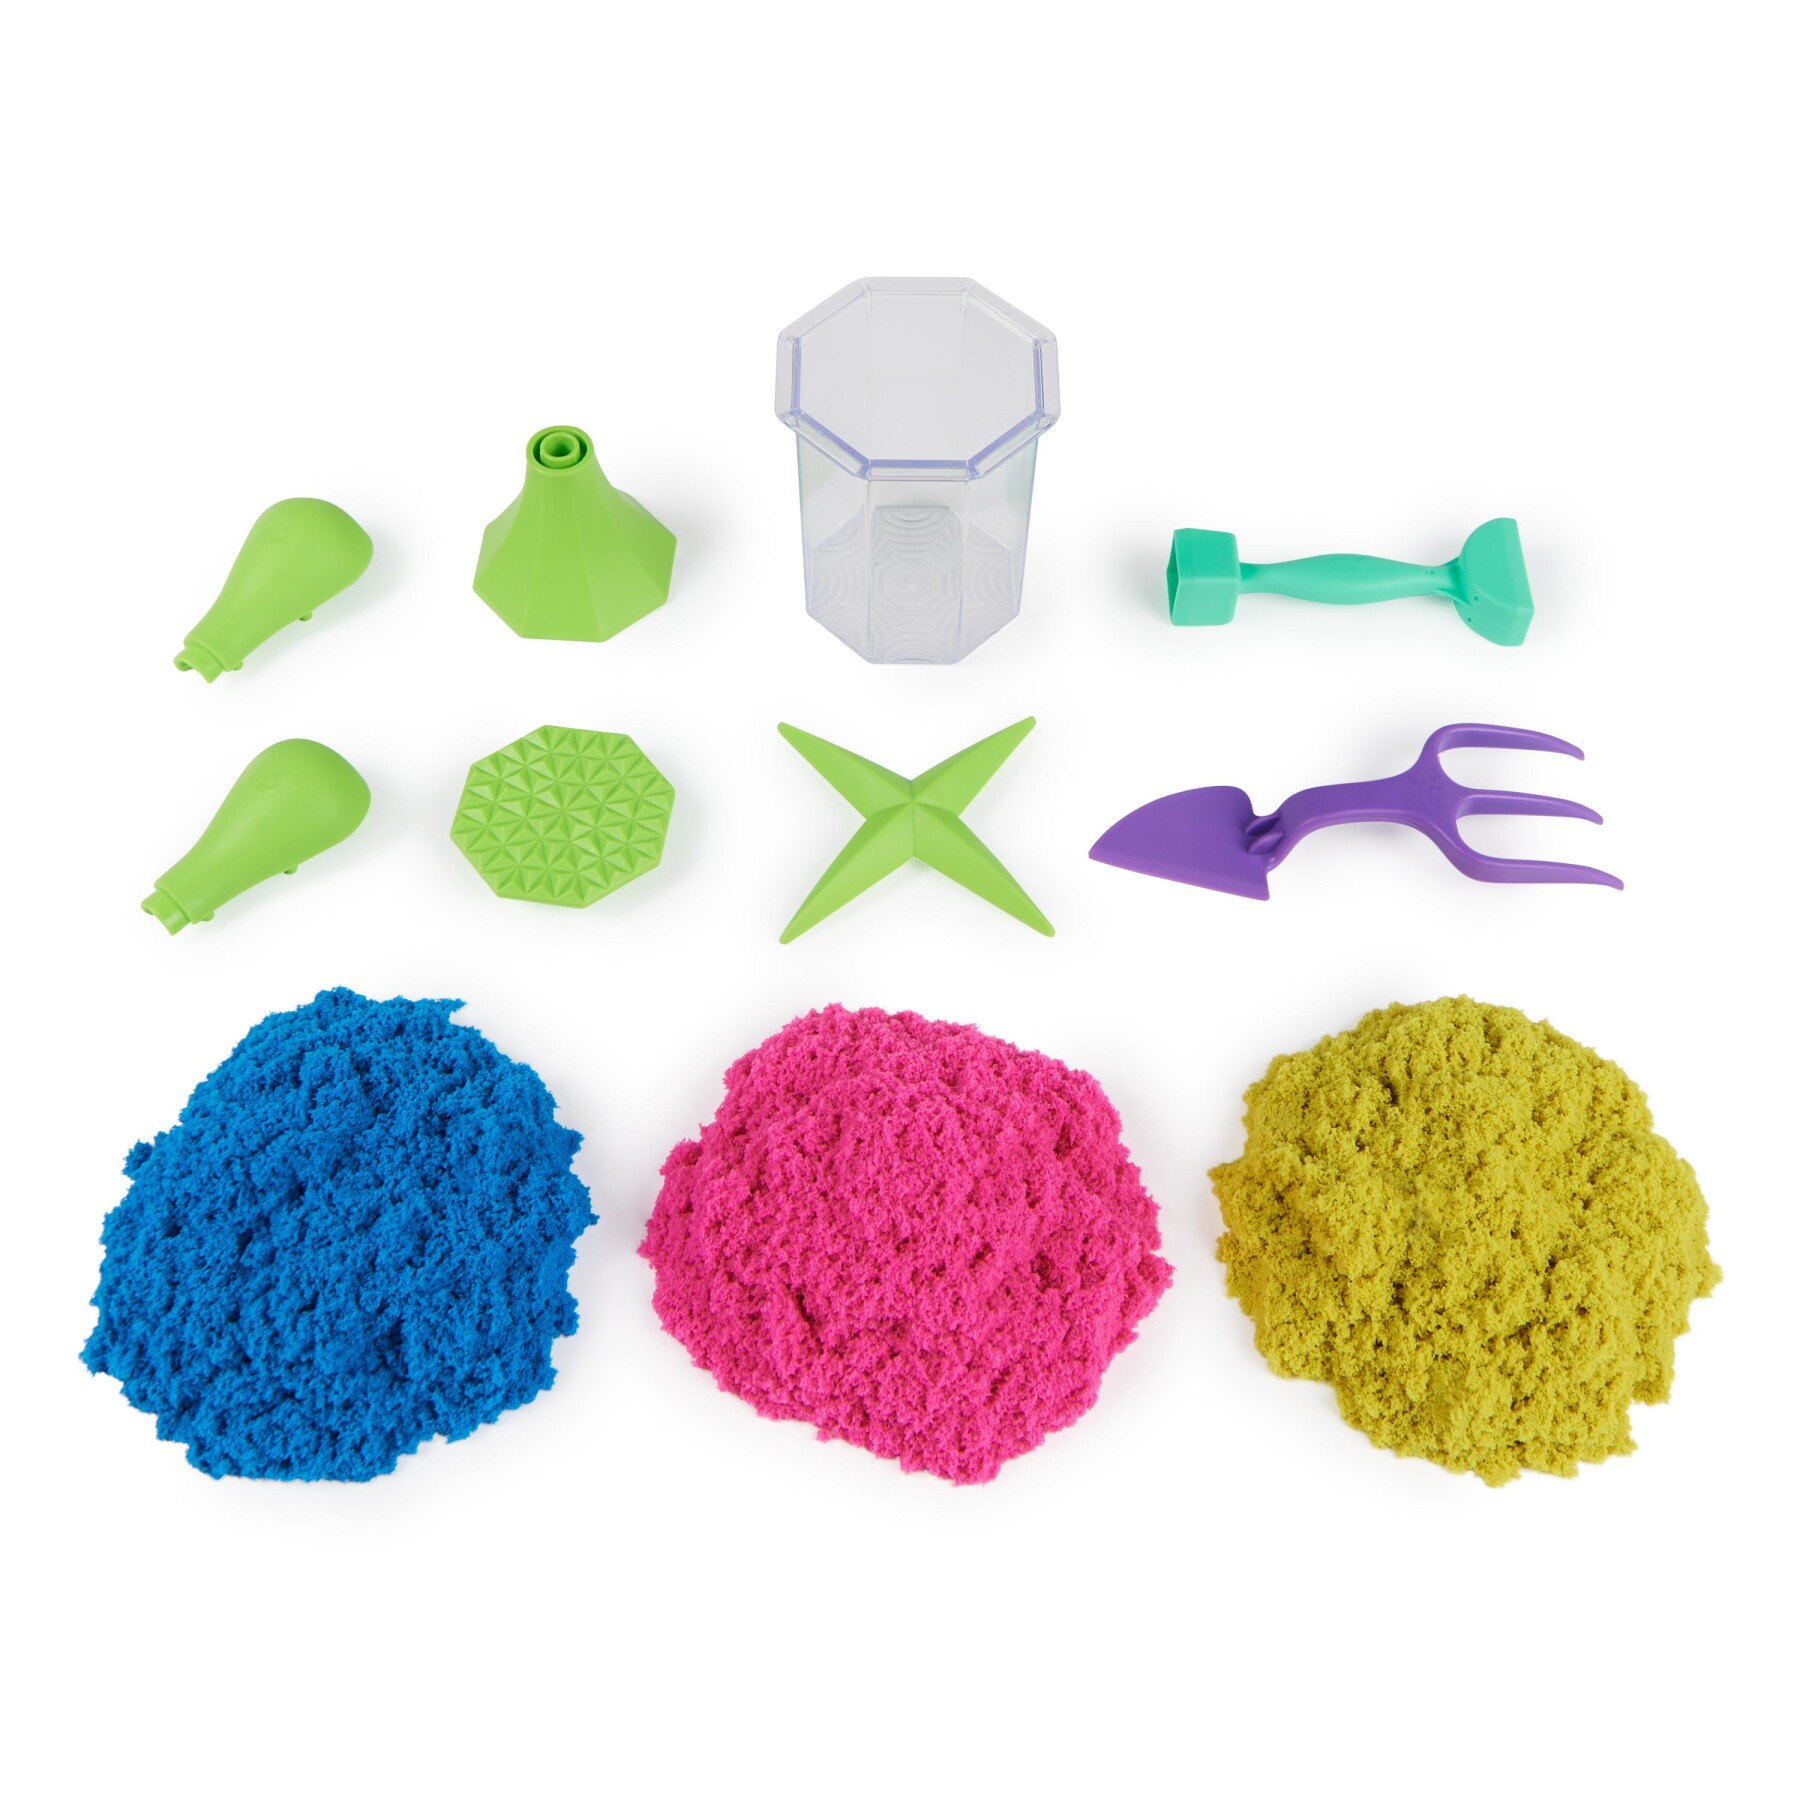 Kinetic sand, set gioco squish n’ create, sabbia colorata in 3 variazioni, sabbia cinetica 382 g, 5 accessori per modellare la sabbia, giocattoli per bambini e bambine 3 anni - KINETIC SAND